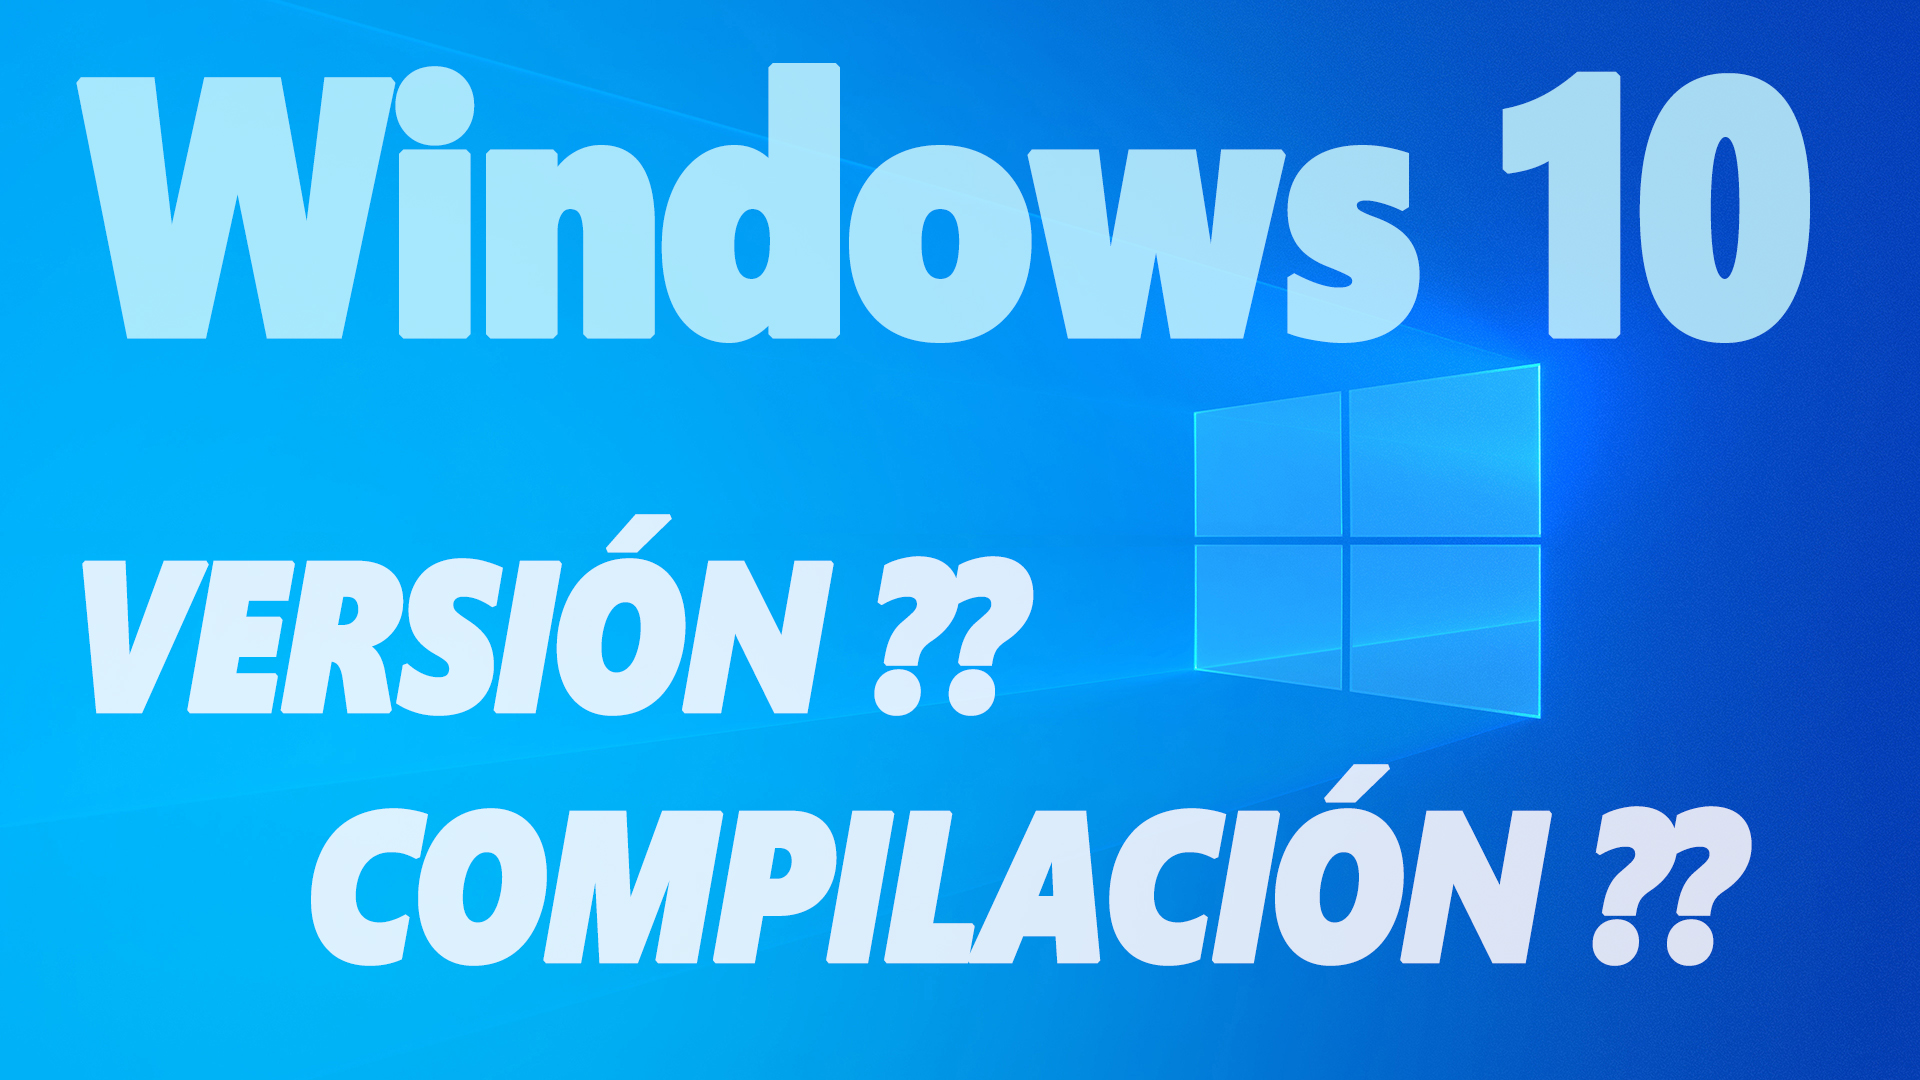 ¿Qué versión de Windows 10 y qué compilación de Windows 10 tengo?